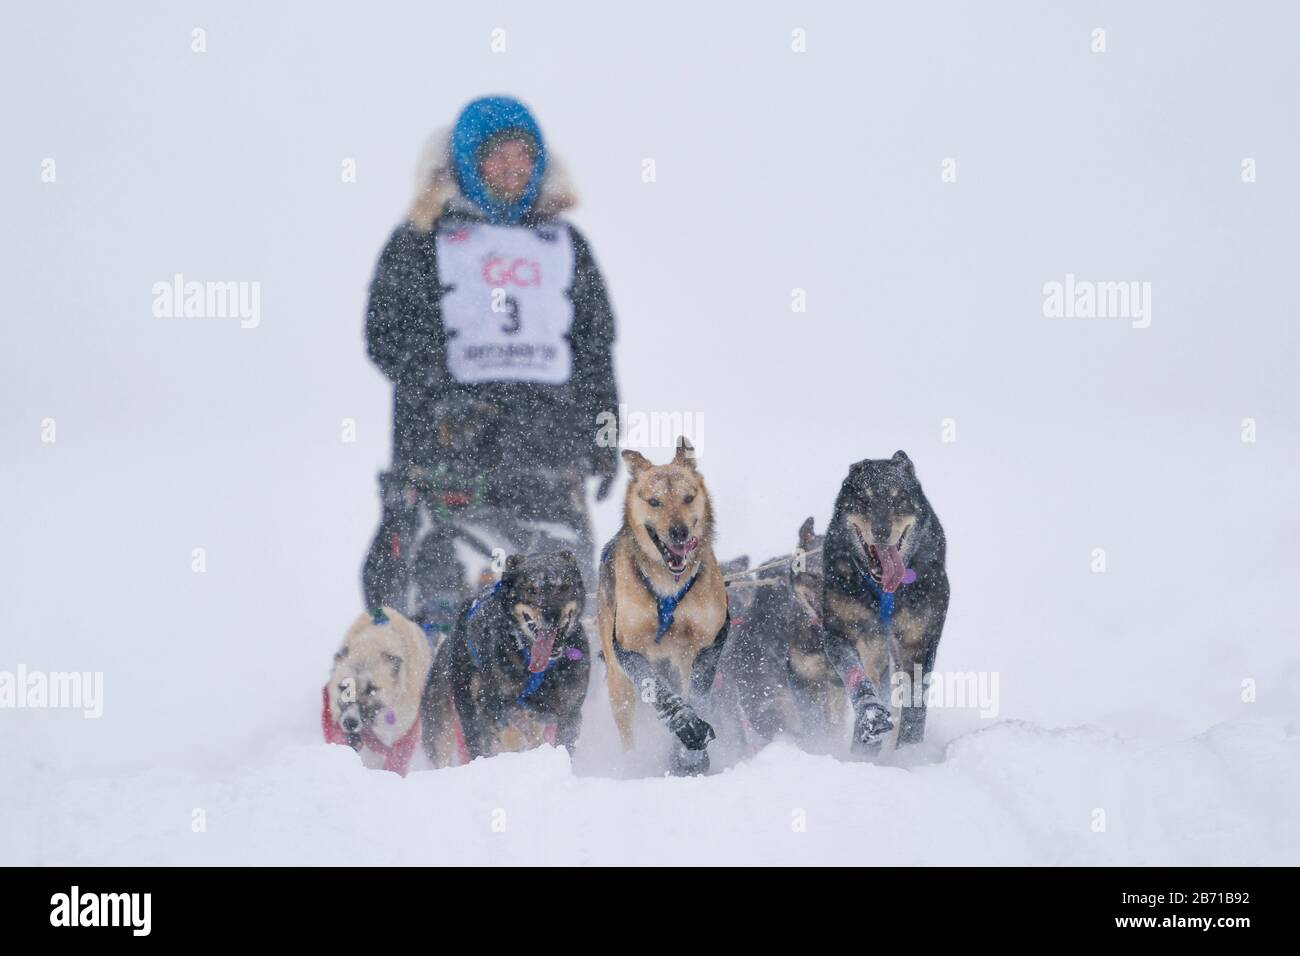 El musher Tim Pappas compitiendo en la 48ª carrera de perros de trineo Iditarod Trail en el centro sur de Alaska. Foto de stock